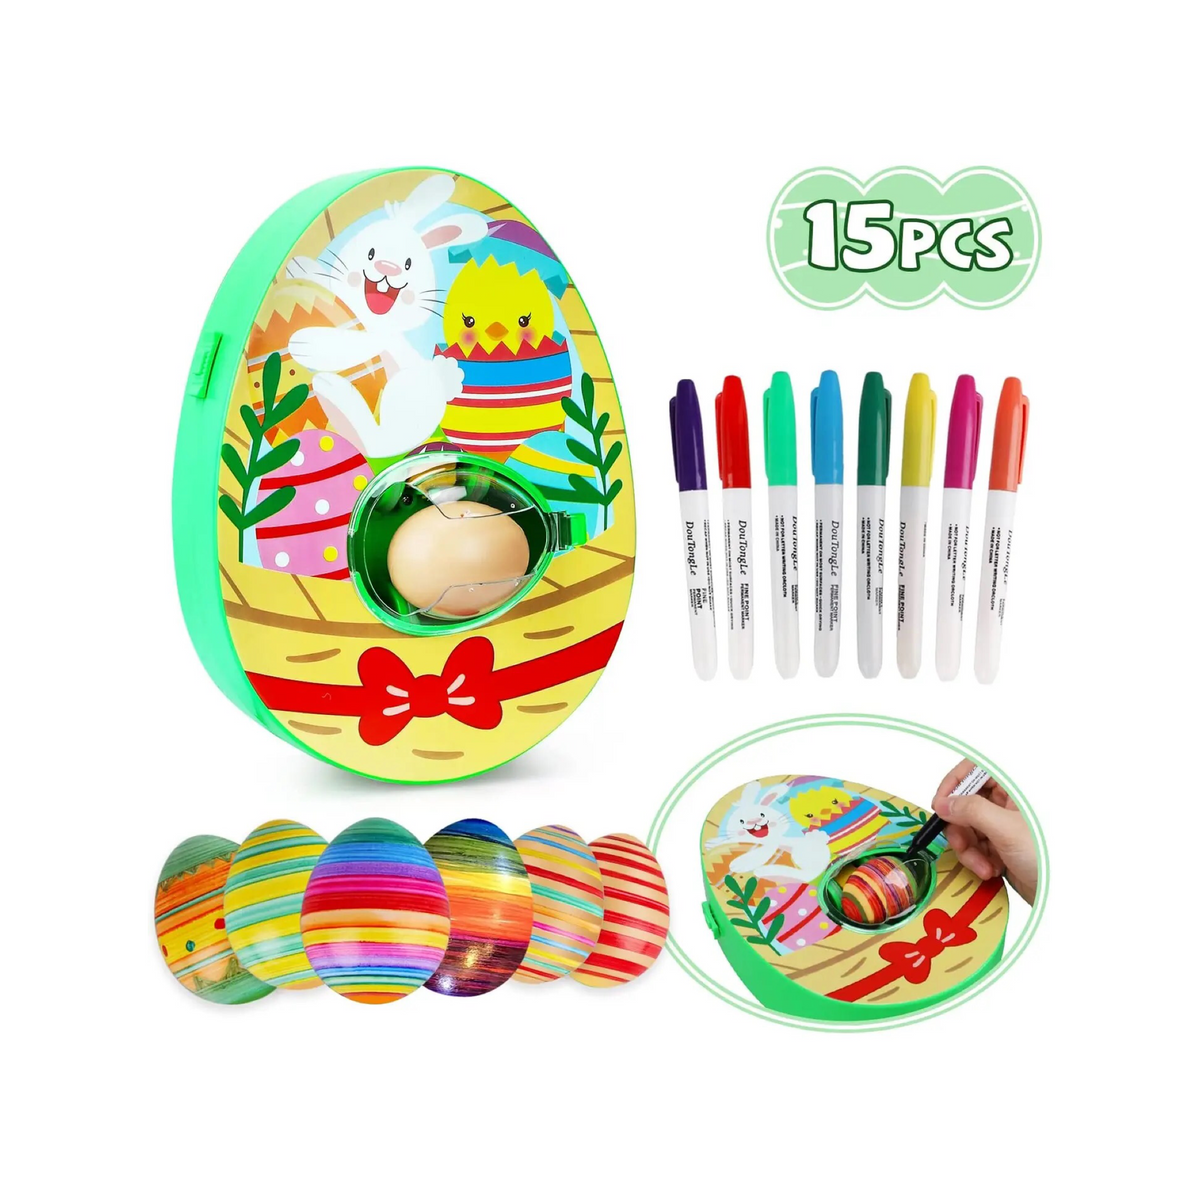 15 Pc Easter Egg Decorating Kit